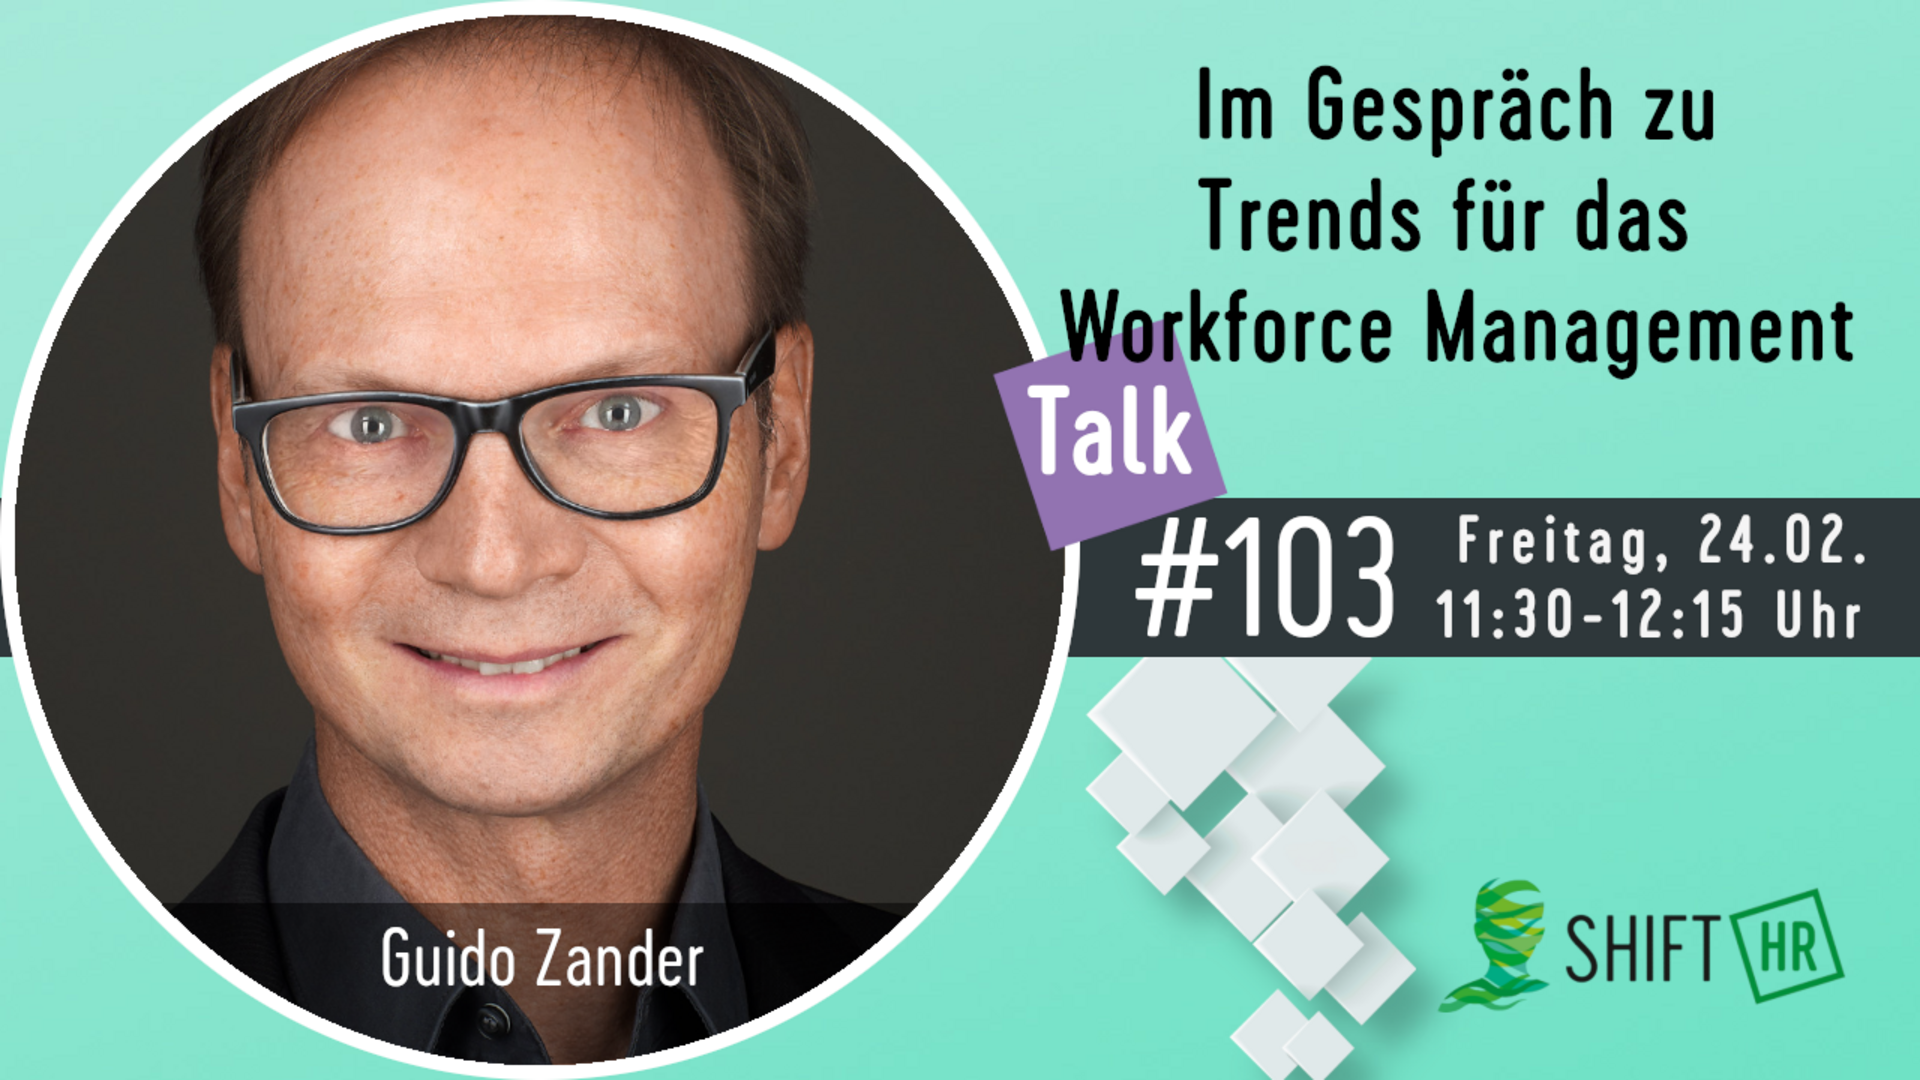 Im Gespräch mit Guido Zander über die Trends für das Workforce Management